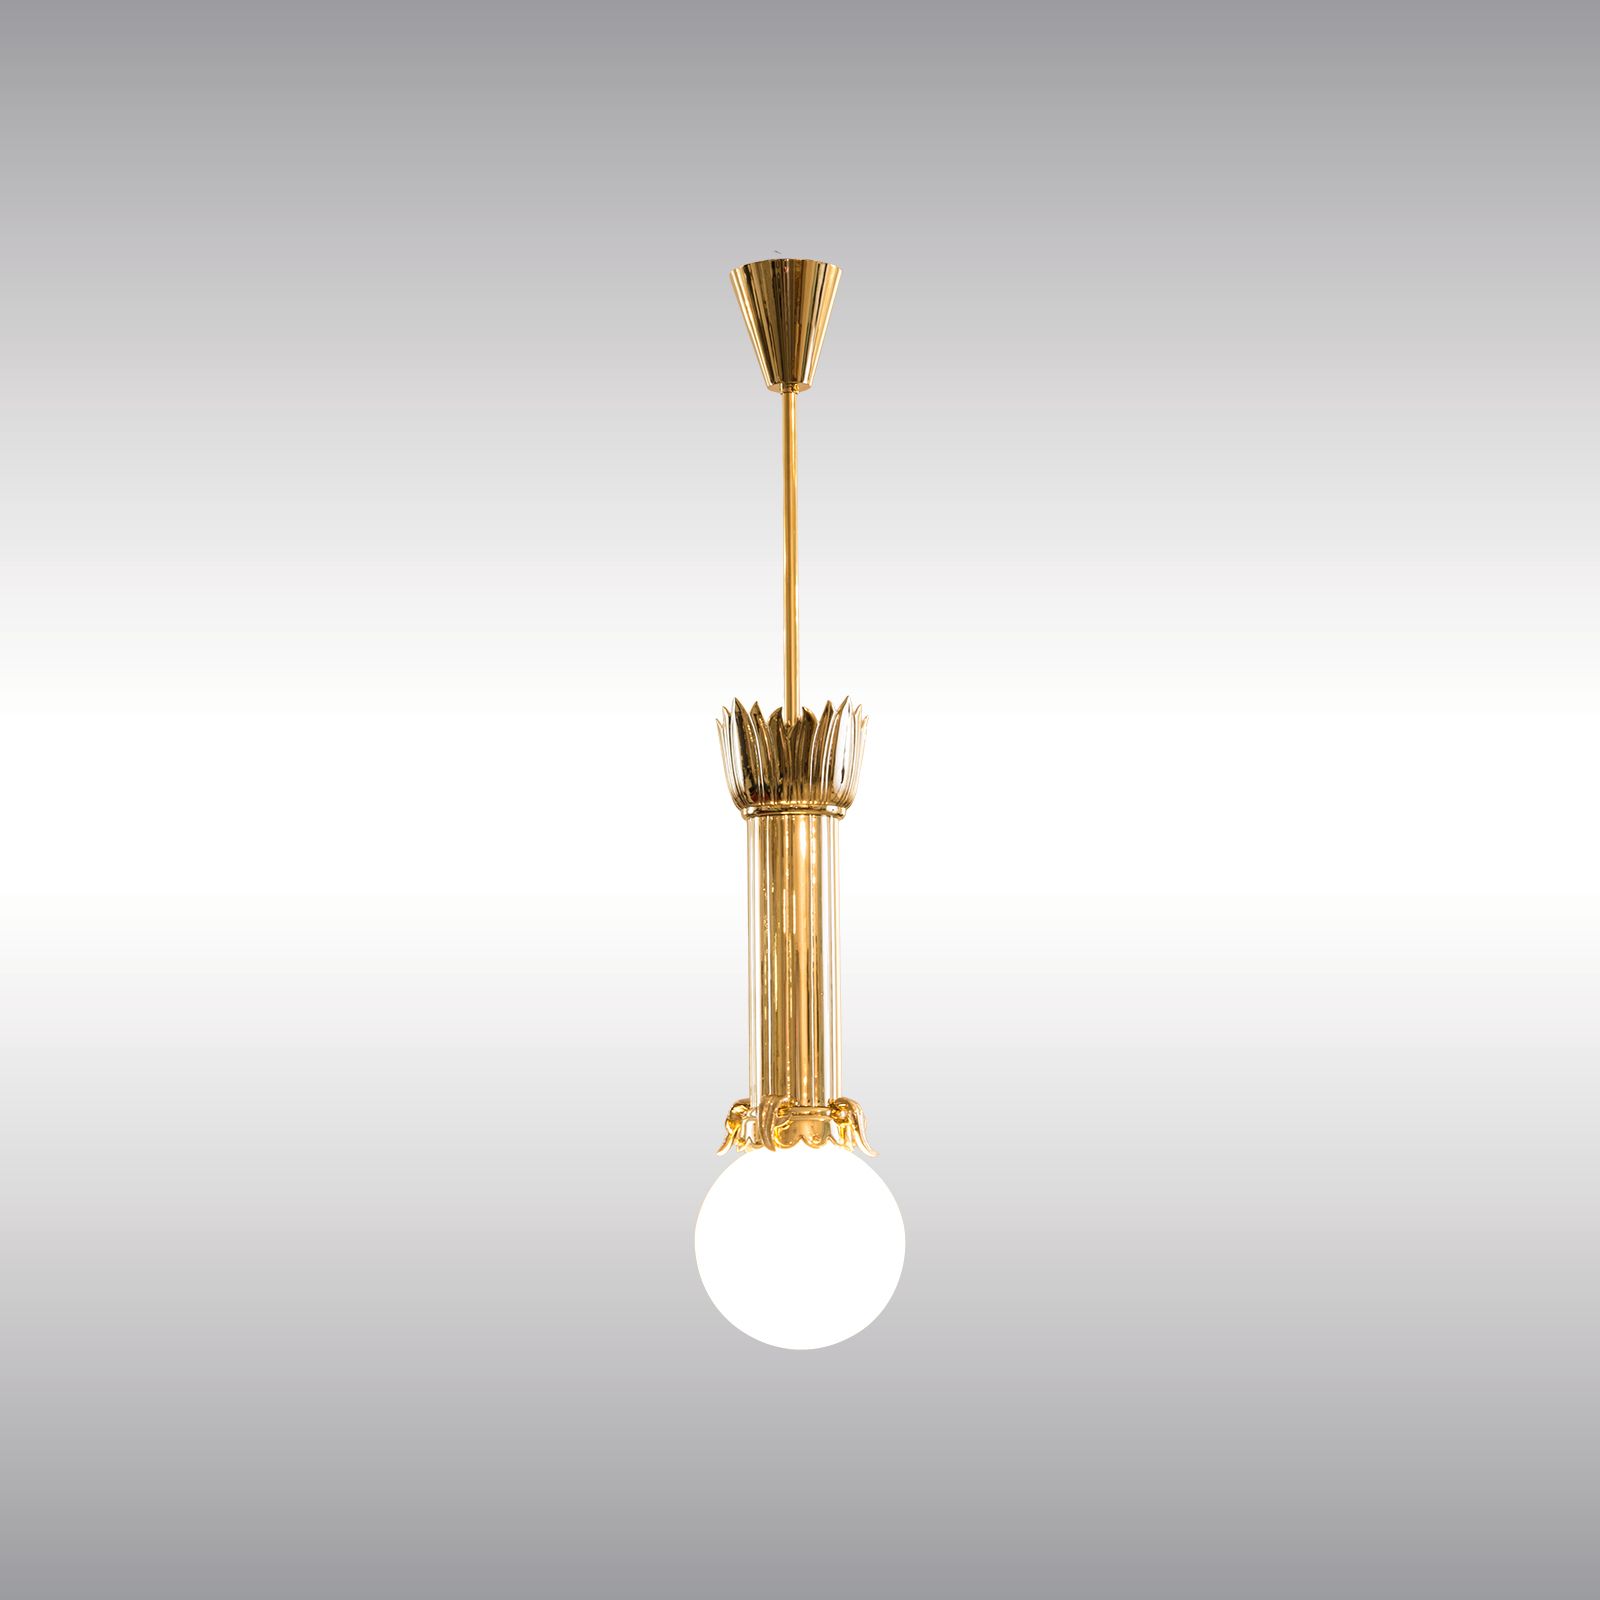 WOKA LAMPS VIENNA - OrderNr.: 22016|Dagobert Peche Wiener Werkstaette Pendant 1913 - Design: Dagobert Peche